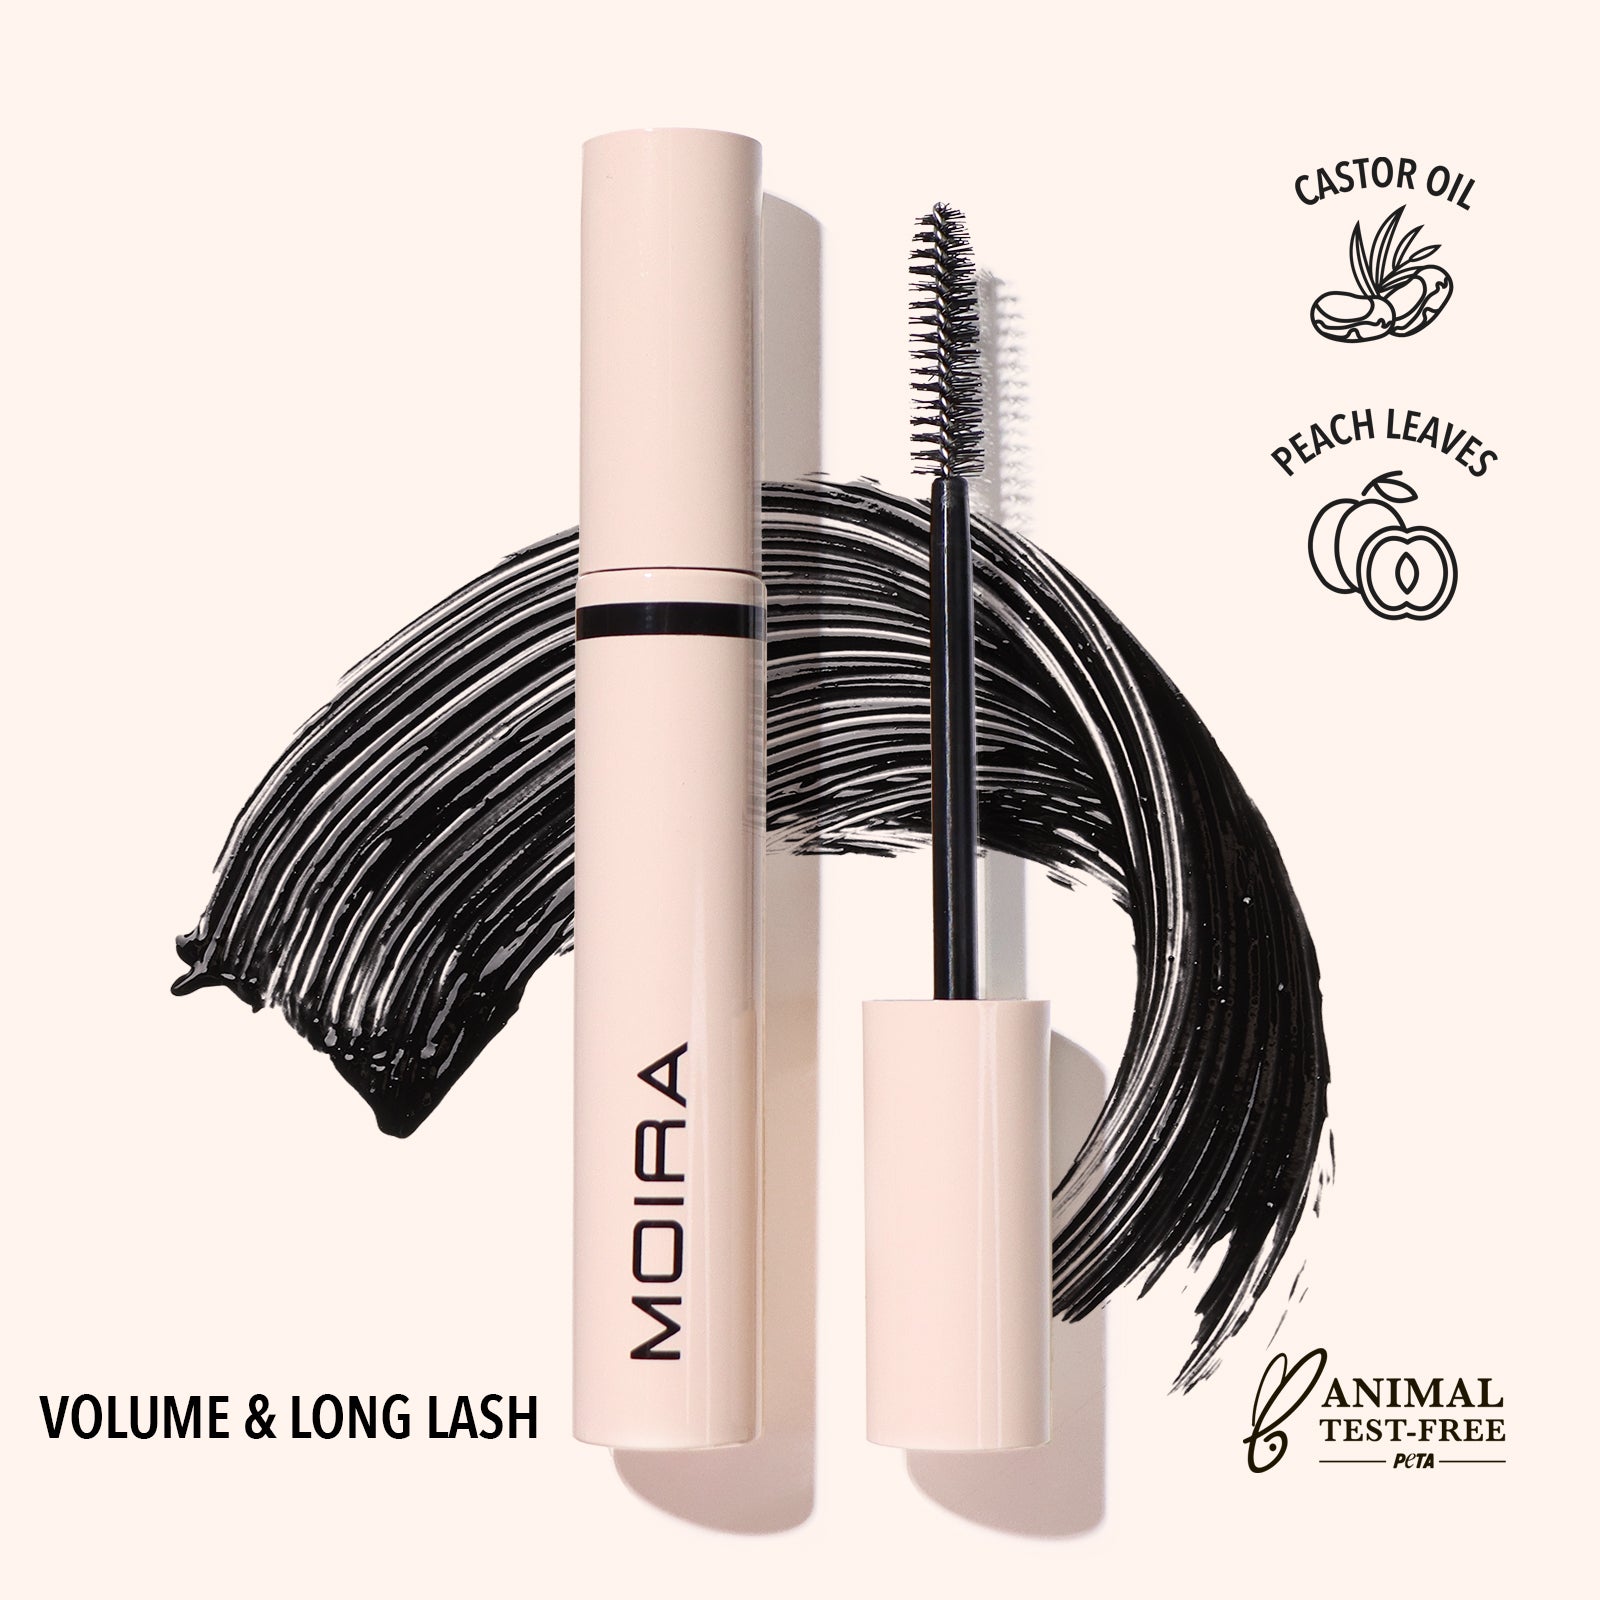 Volume & Long Lash Mascara